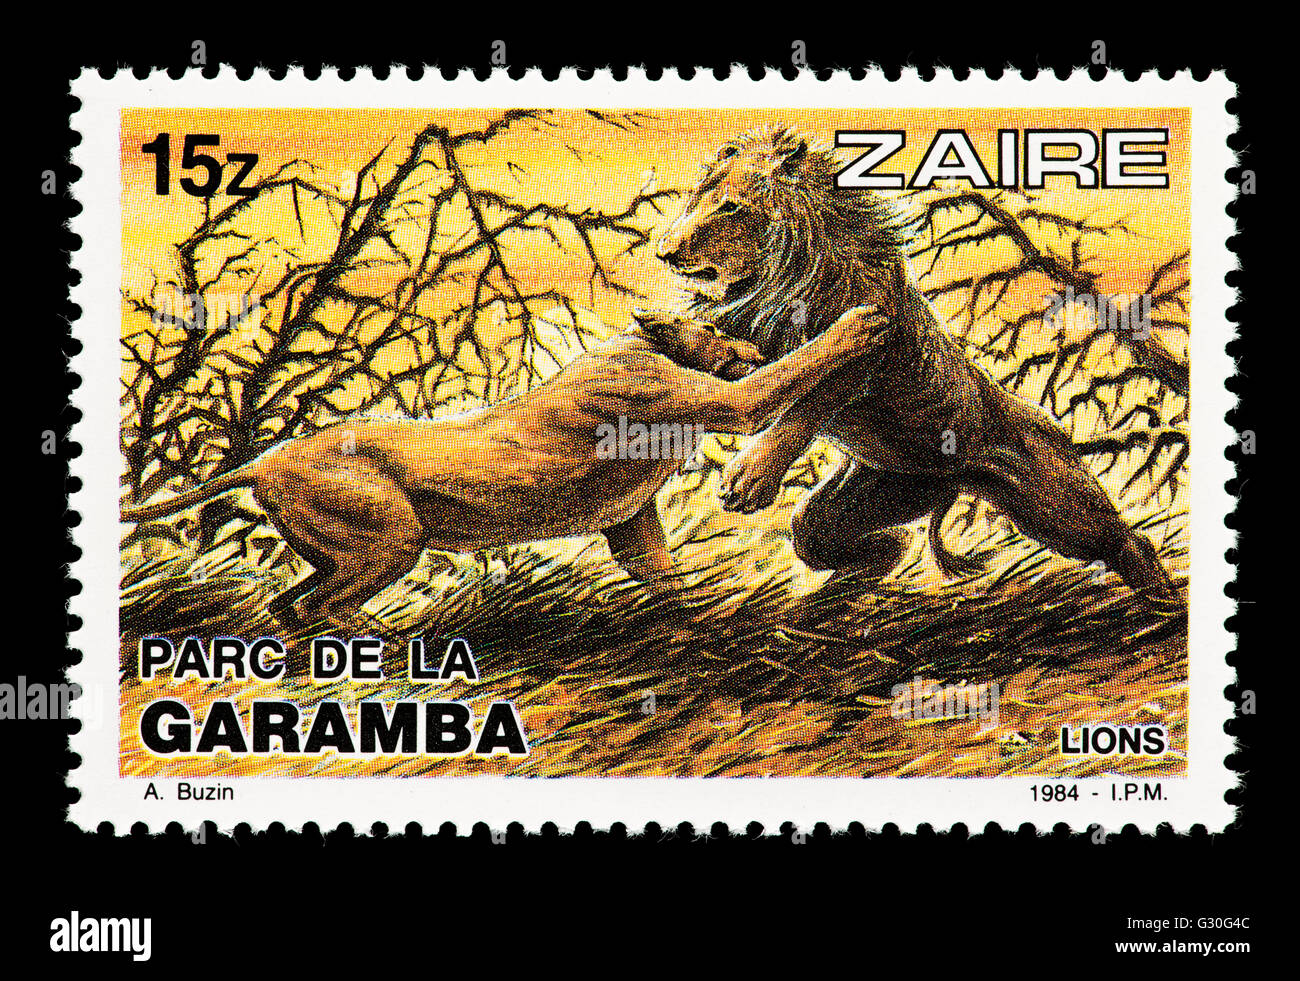 Briefmarke aus Zaire, die Darstellung von zwei Löwen kämpfen, ausgestellt für Garamba-Nationalpark im Kongo. Stockfoto